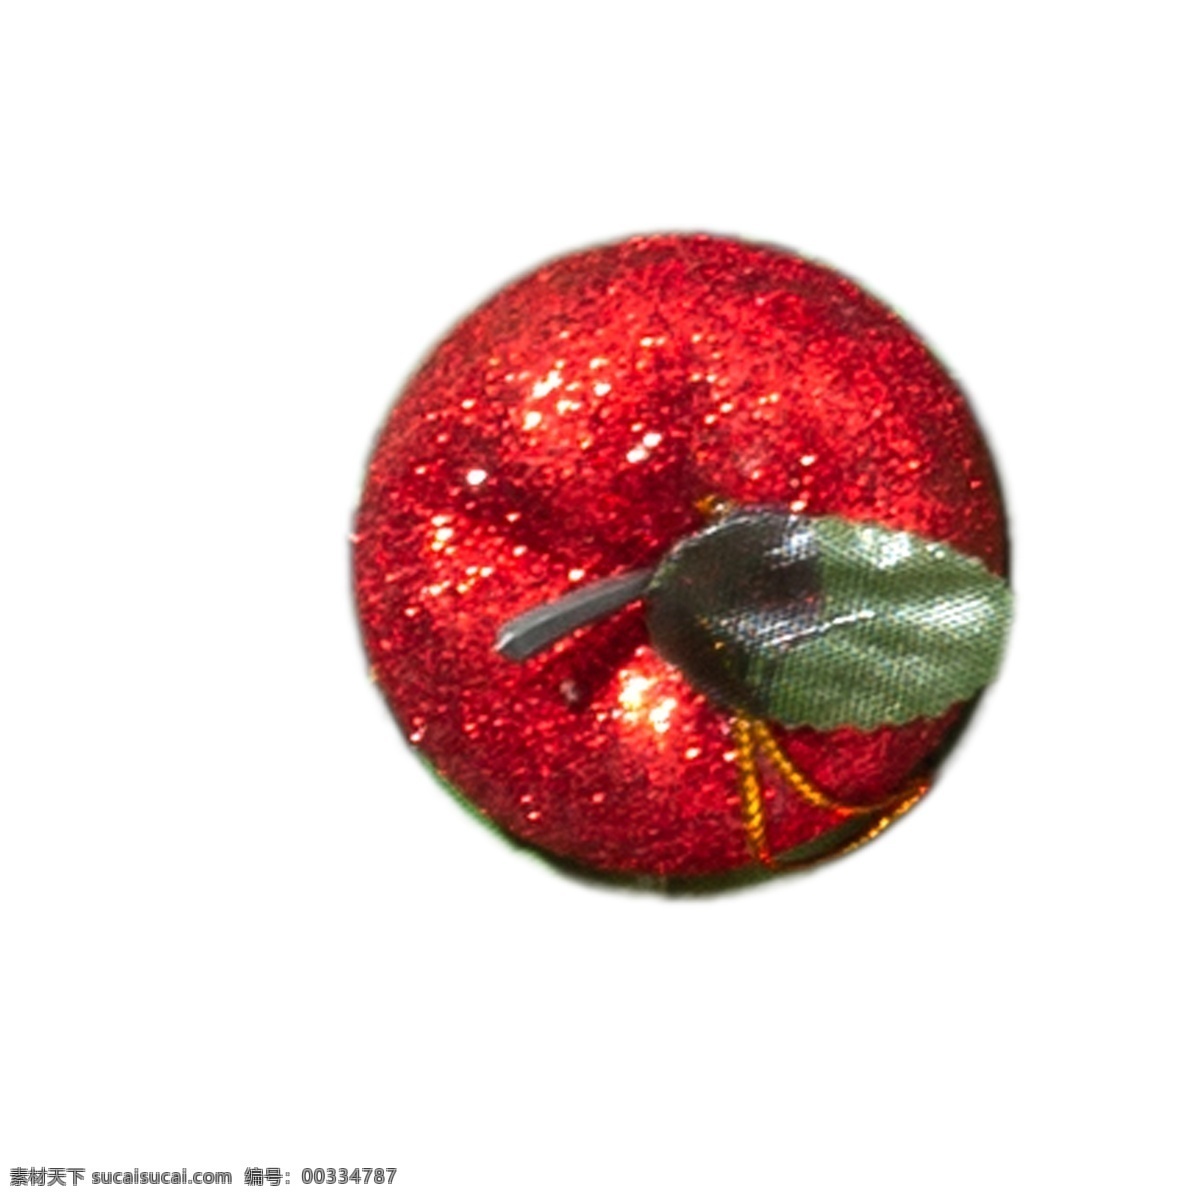 红色 苹果 免 扣 圣诞装饰 节日装饰 电商 天猫 淘宝 卡通插图 创意卡通下载 插图 png图下载